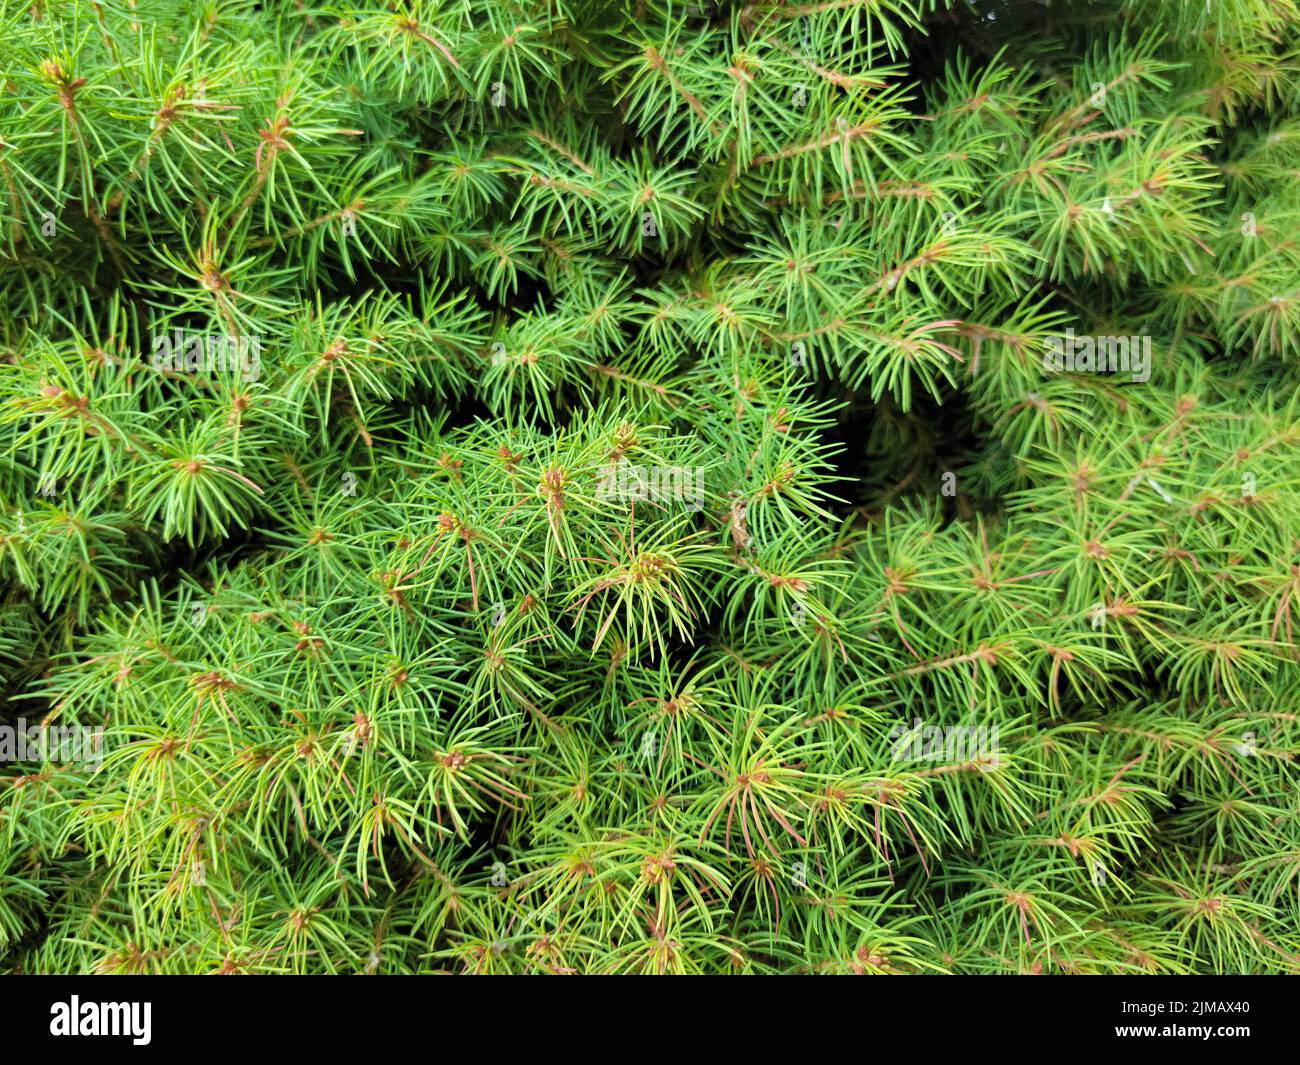 Close up of a green Cathaya pine bush Stock Photo